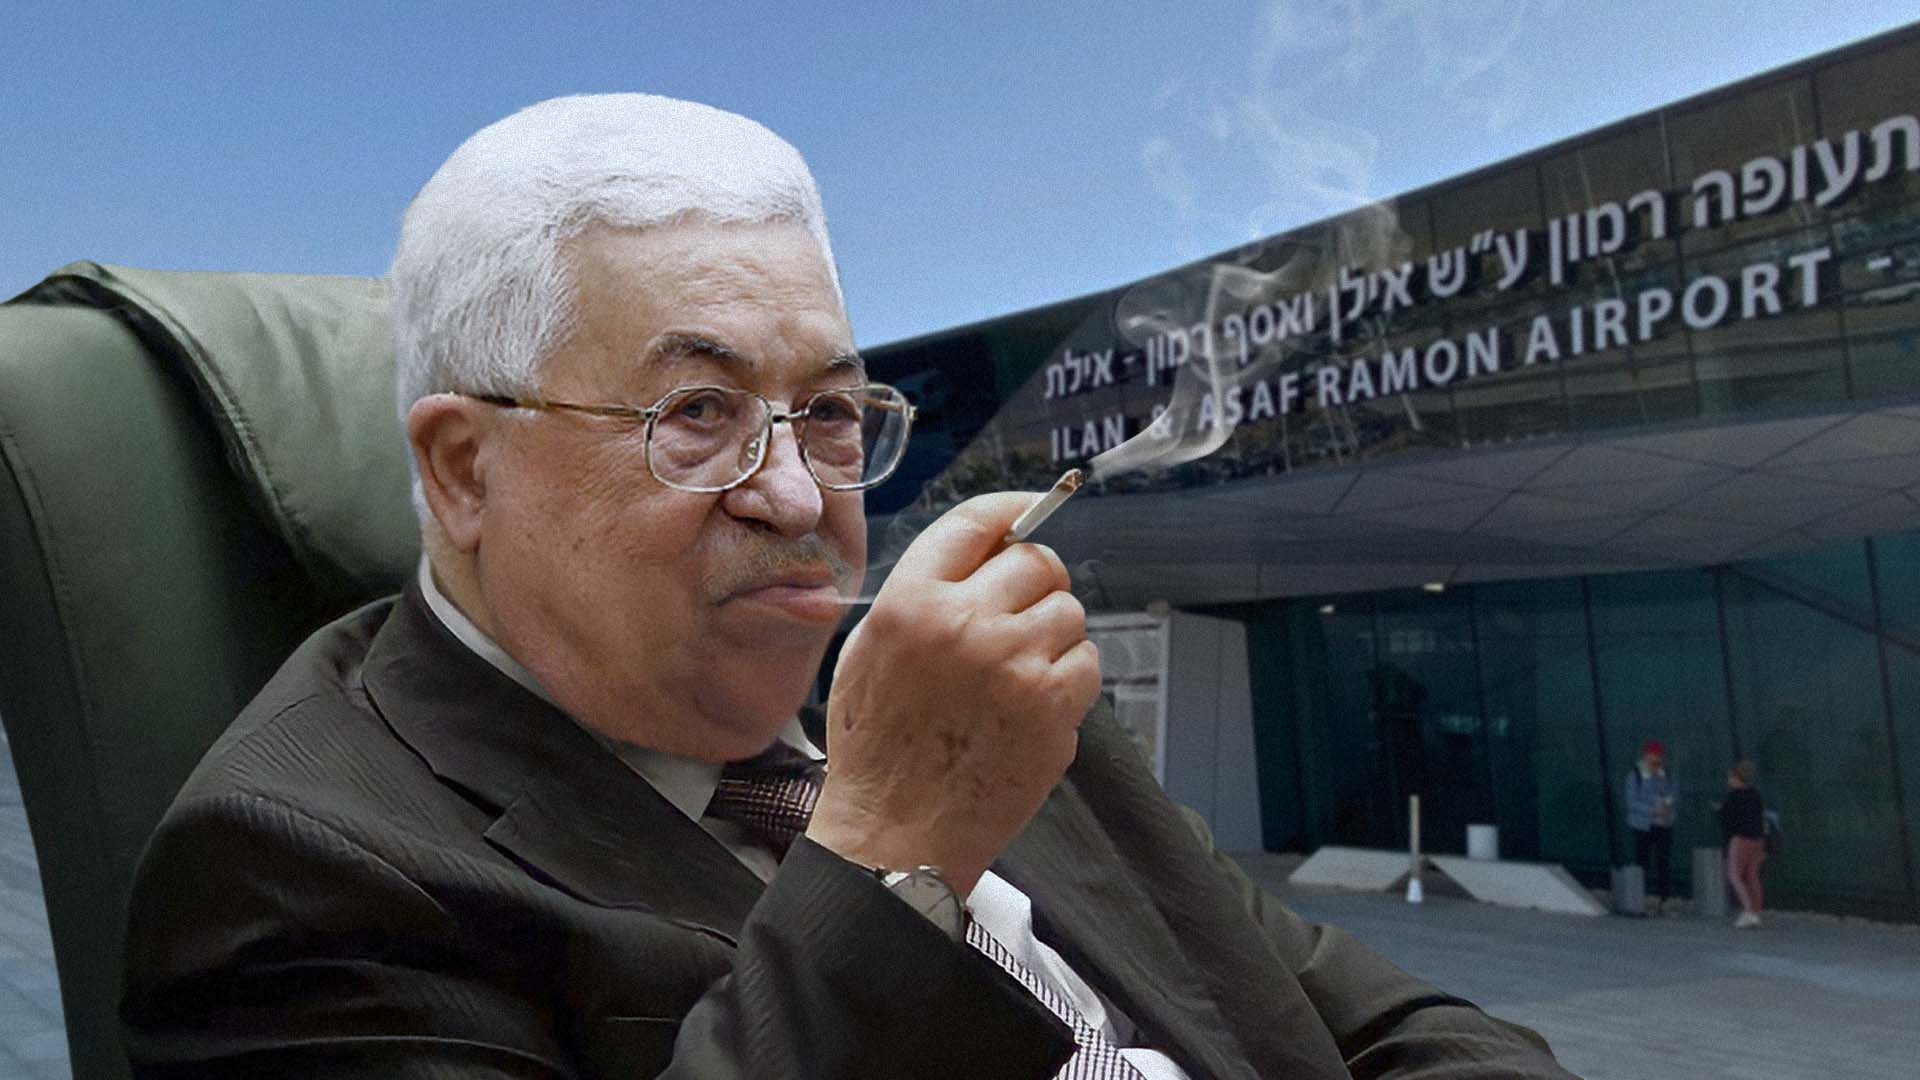 صورة السلطة تؤكد أنها ستفرض السيادة الفلسطينية في مطار رامون وتمنع تهريب السجائر دون ضرائب